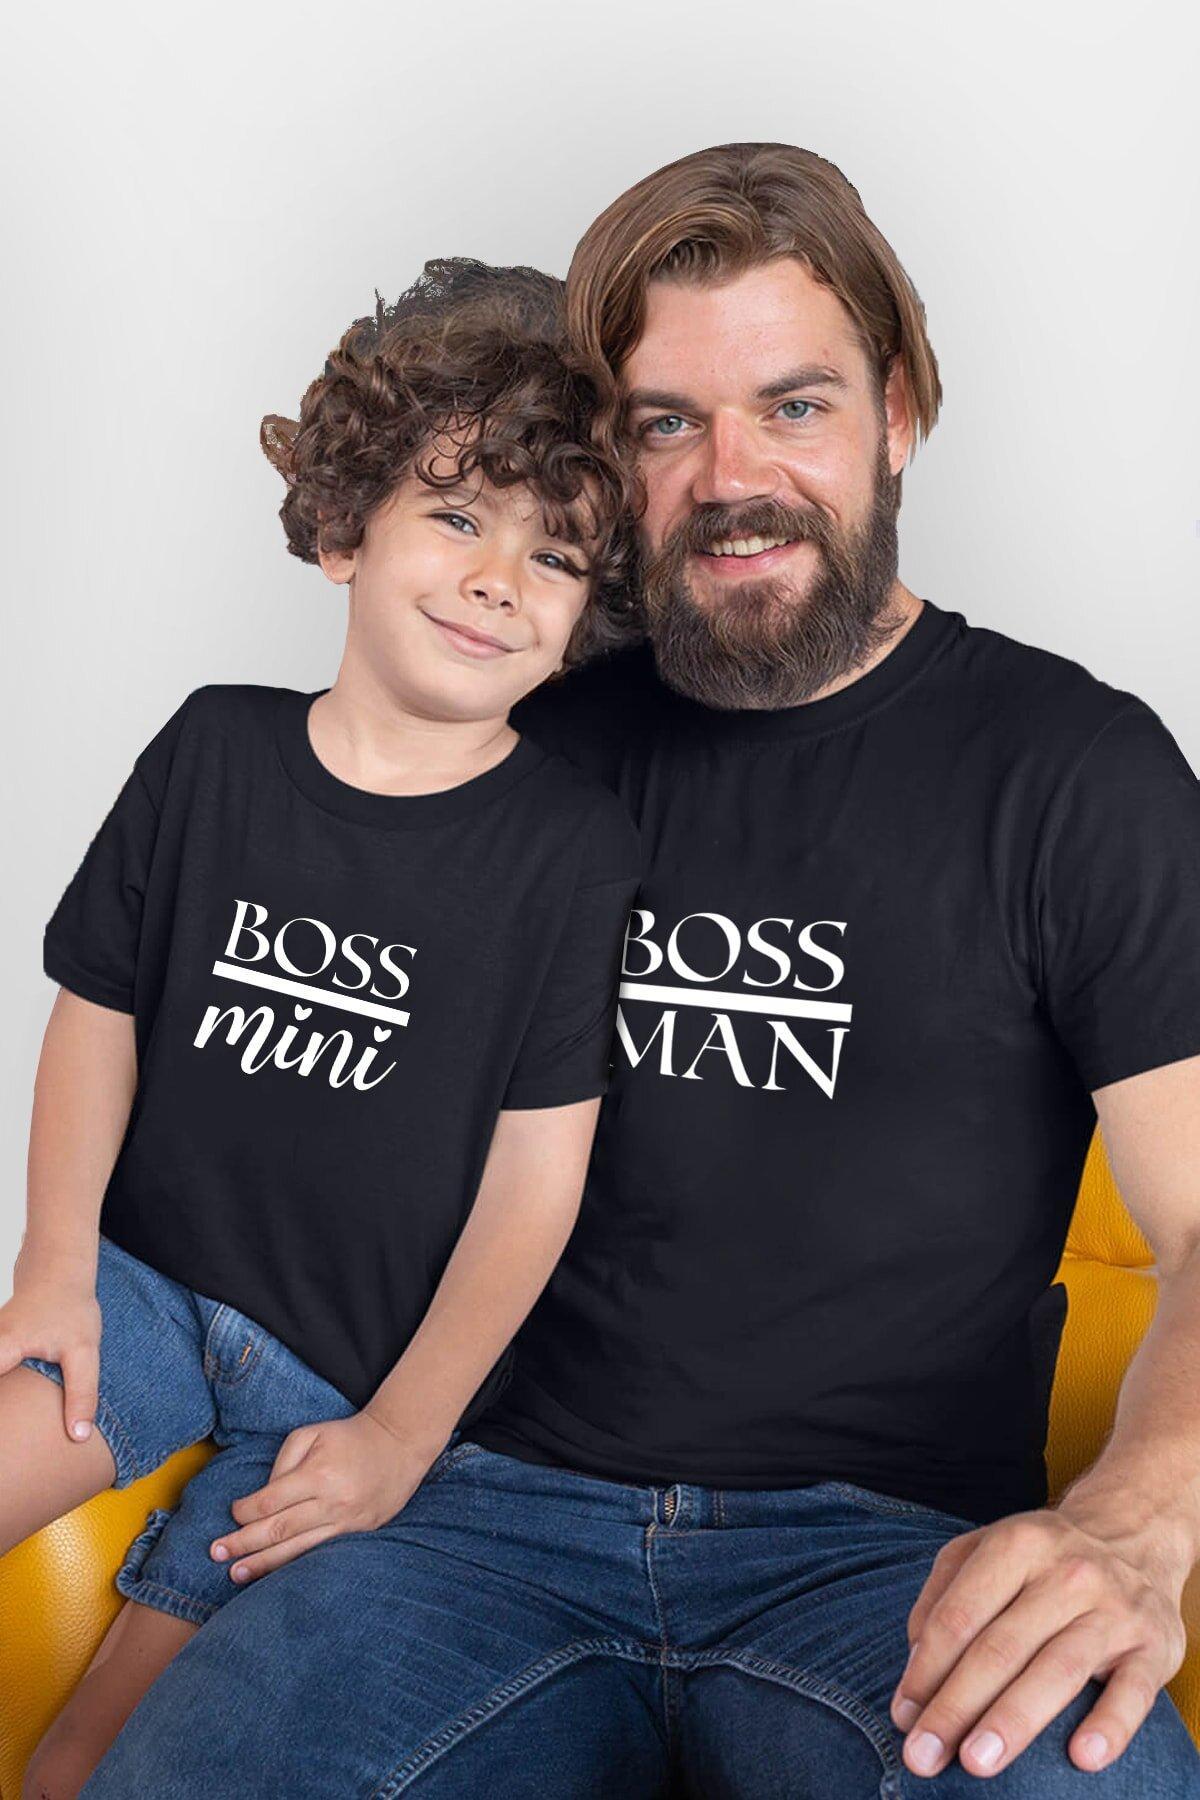 Boss Man Boss Mini Baba Oğul Tshirt (Tek Ürün Fiyatıdır Kombin Yapmak için 2 Adet Sepete Ekleyiniz)